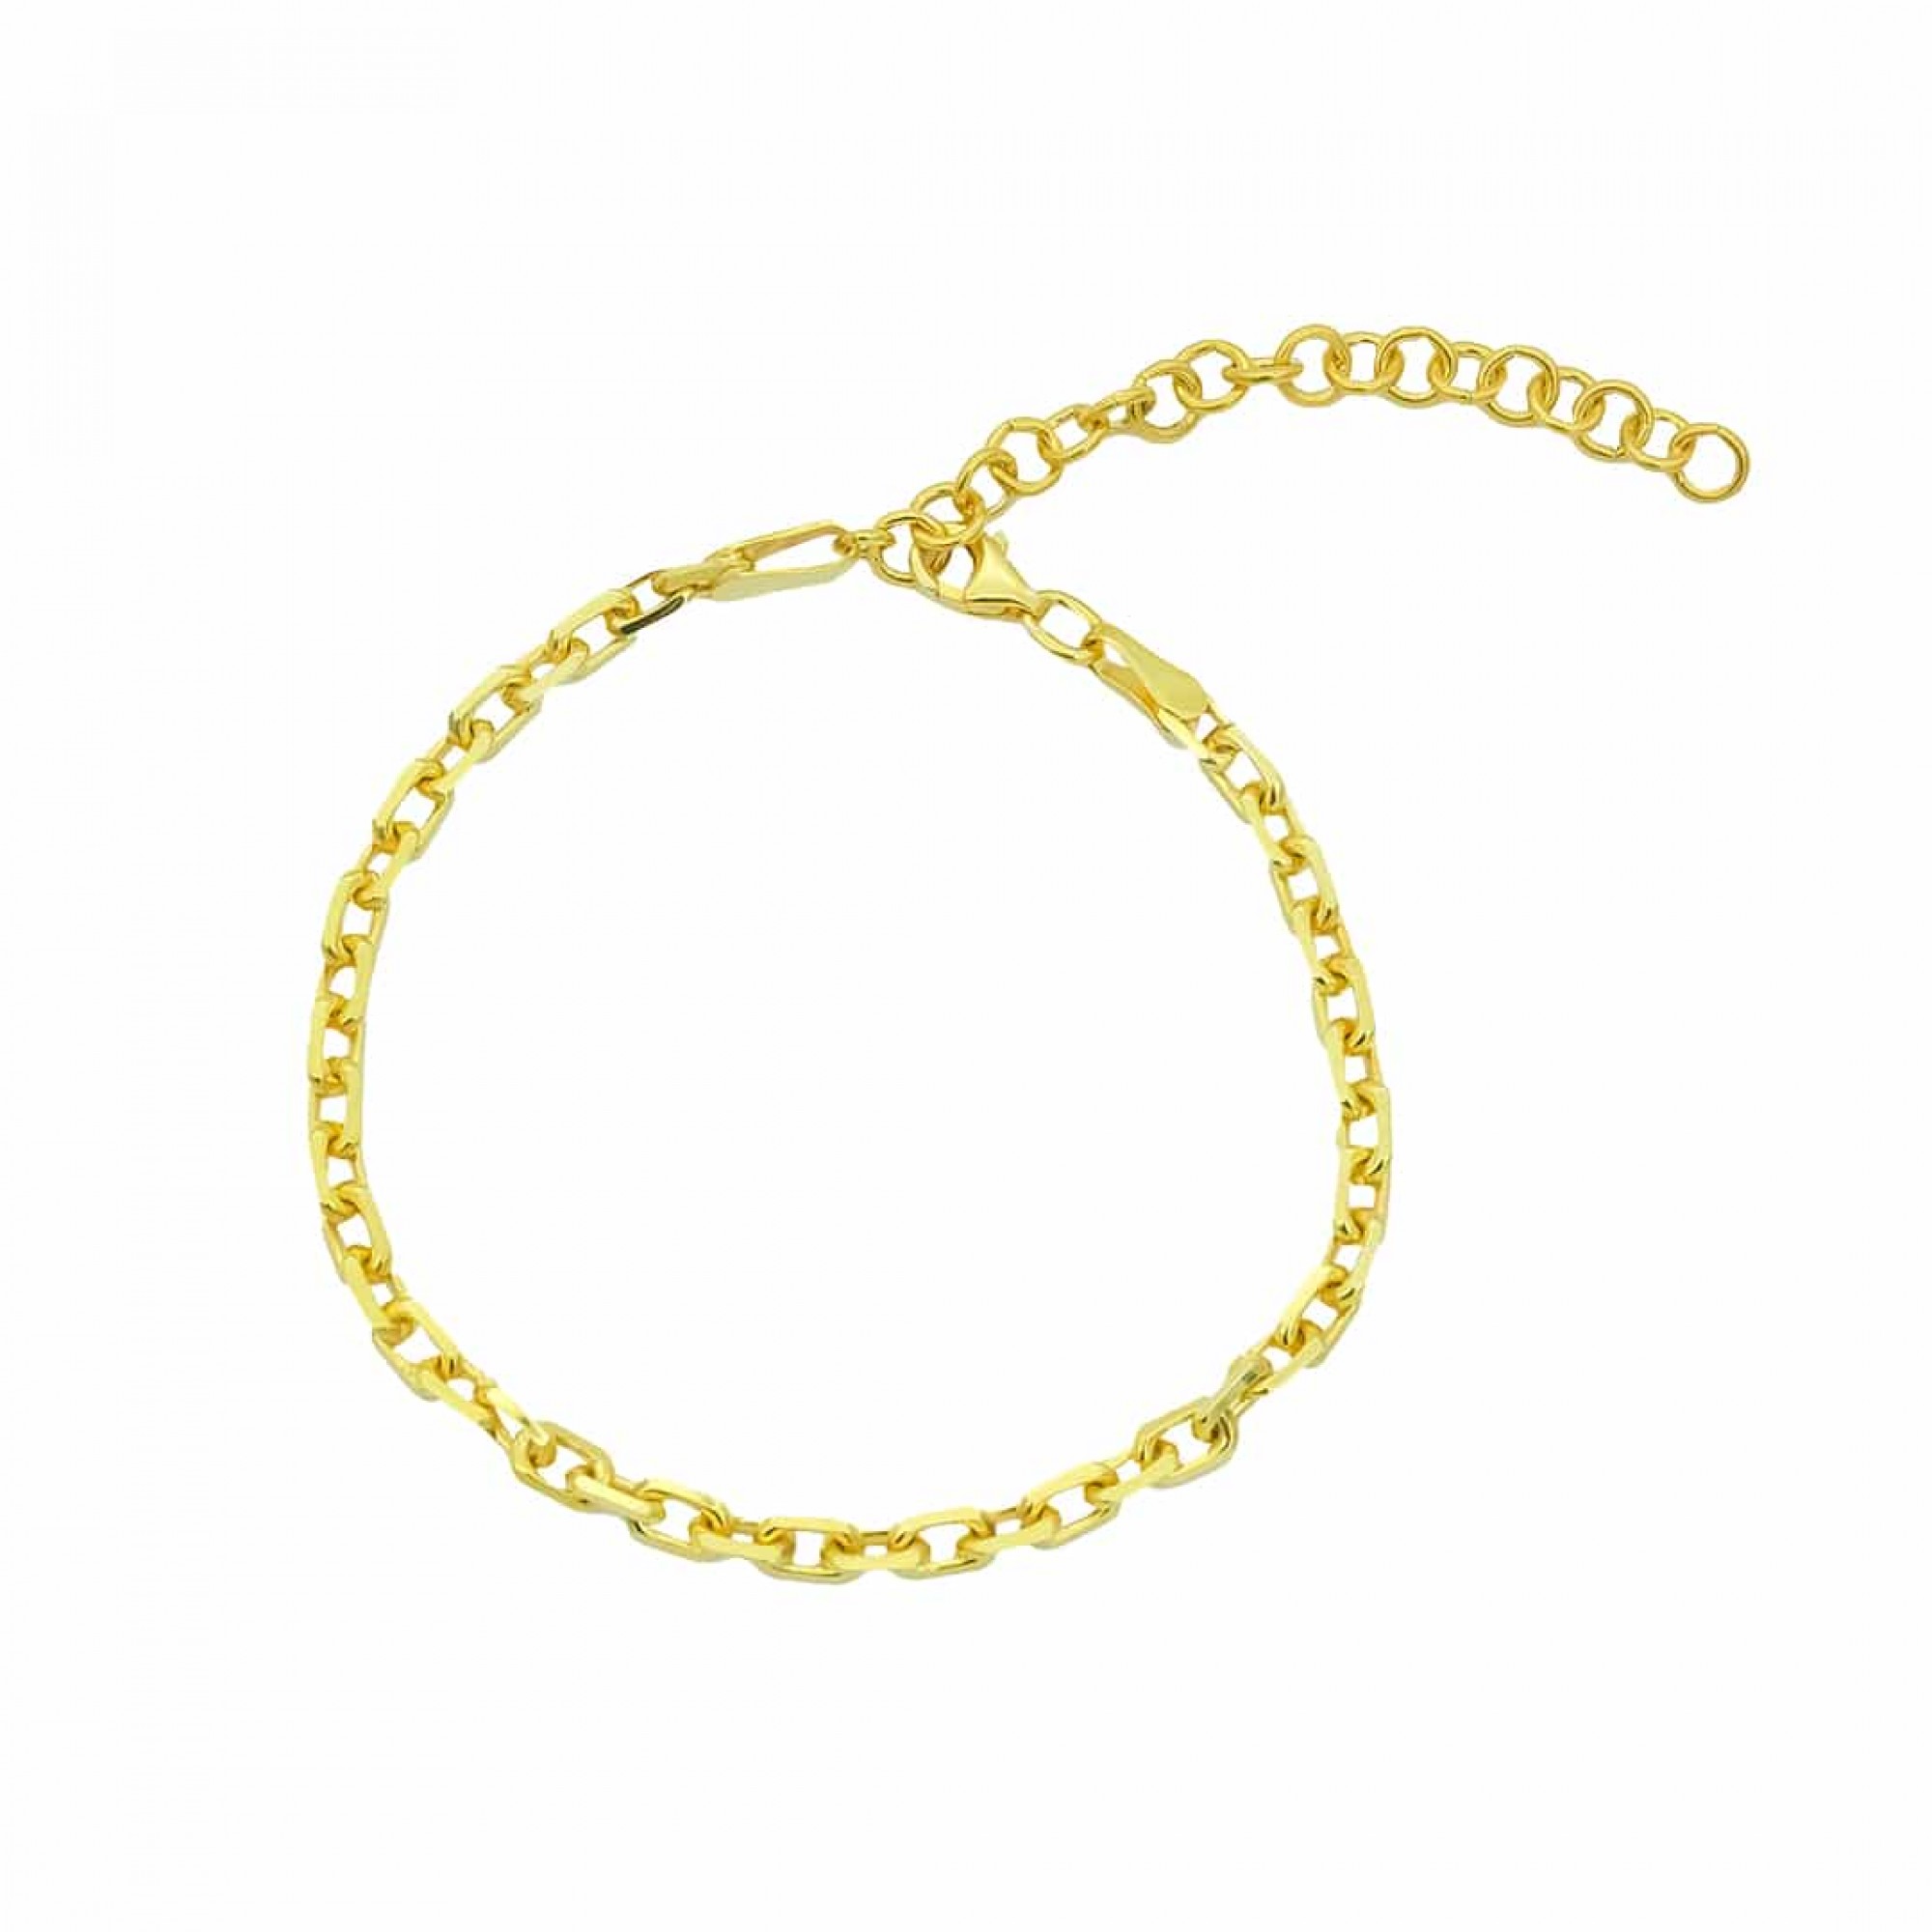 Silber Armkette/Armband Silber Gold FashionJuwelier 925 ideal - Armschmuck oder als in Geschenk